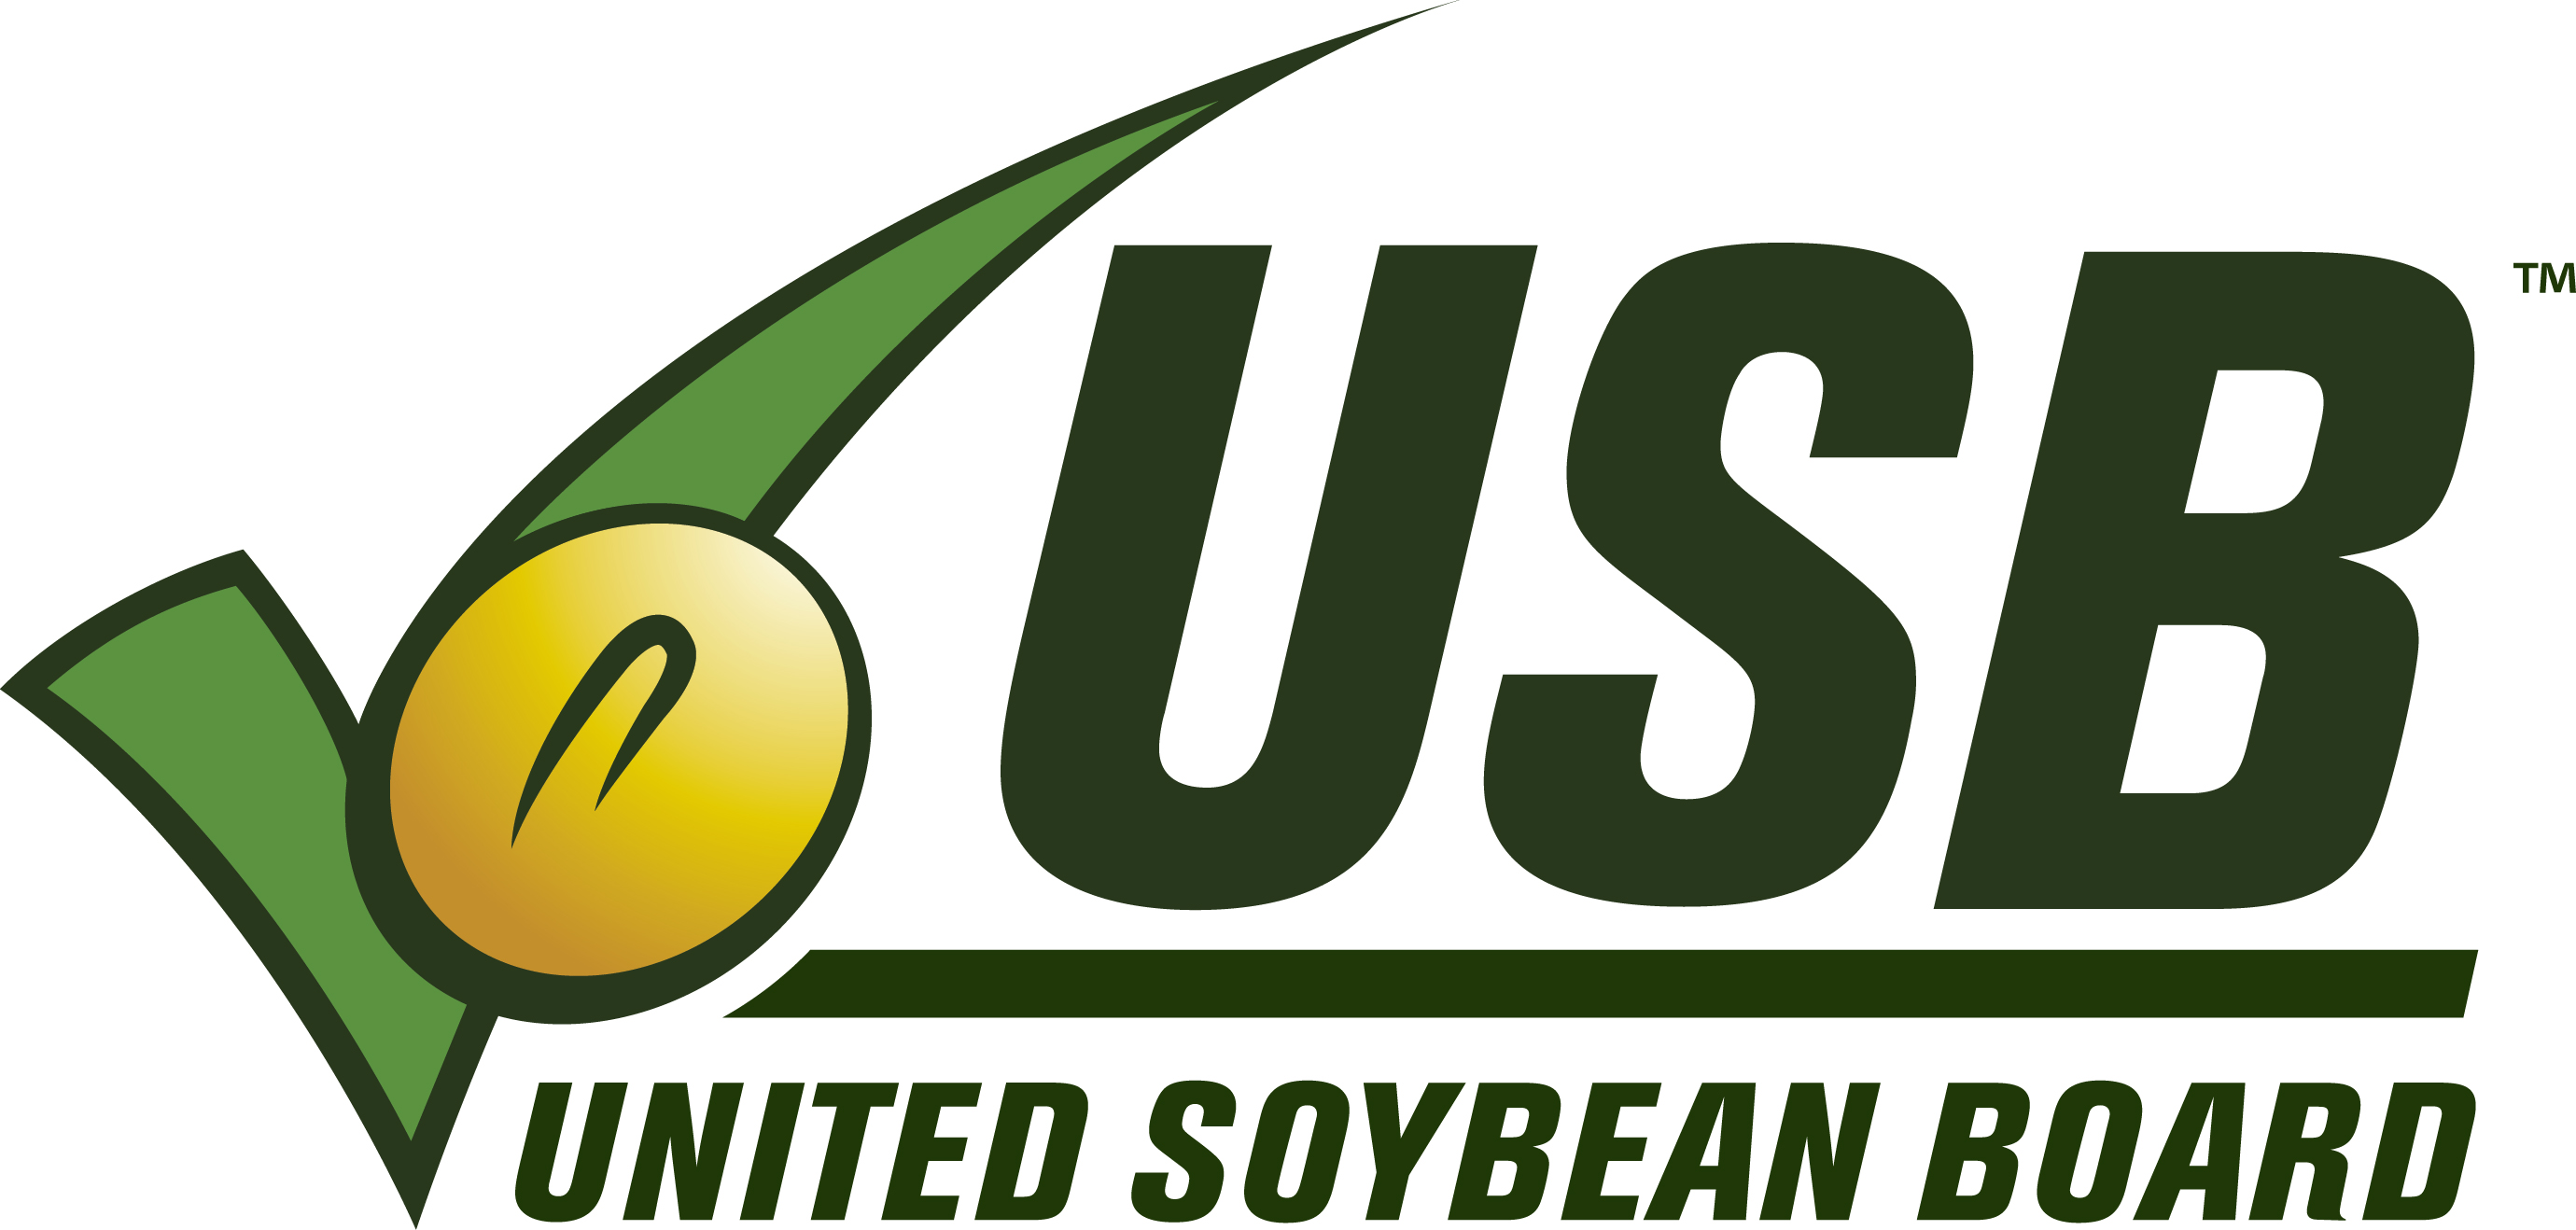 United SOybean Board